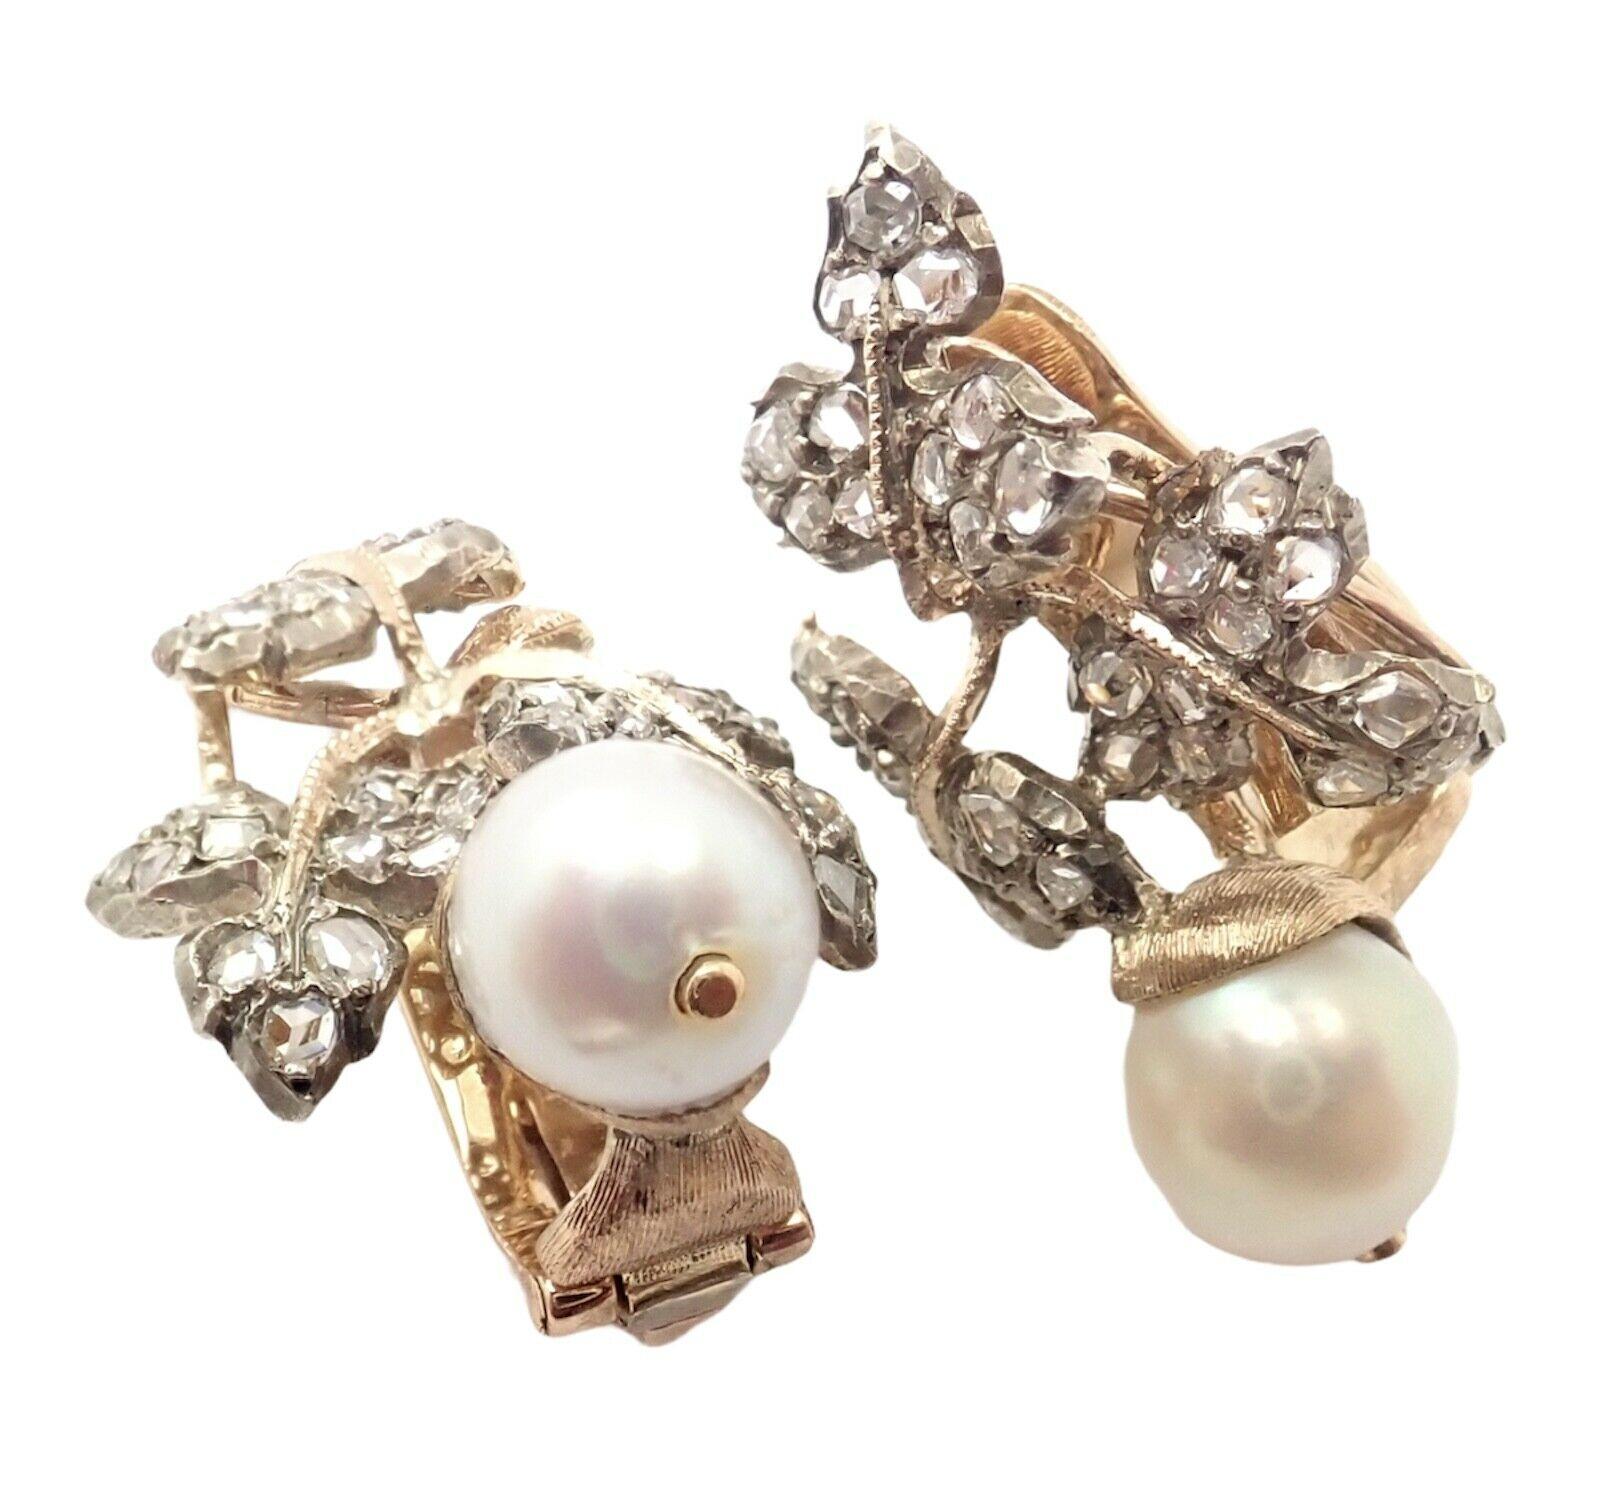 18k Gelbgold Diamant Perle Vintage Ohrringe von Gianmaria Buccellati. 
Mit 66 Diamanten im Rosenschliff Gesamtgewicht ist ungefähr  1,5ct
2 Perlen à 6,5 mm
Diese Ohrringe sind für nicht gepiercte Ohren gedacht, können aber durch Hinzufügen von